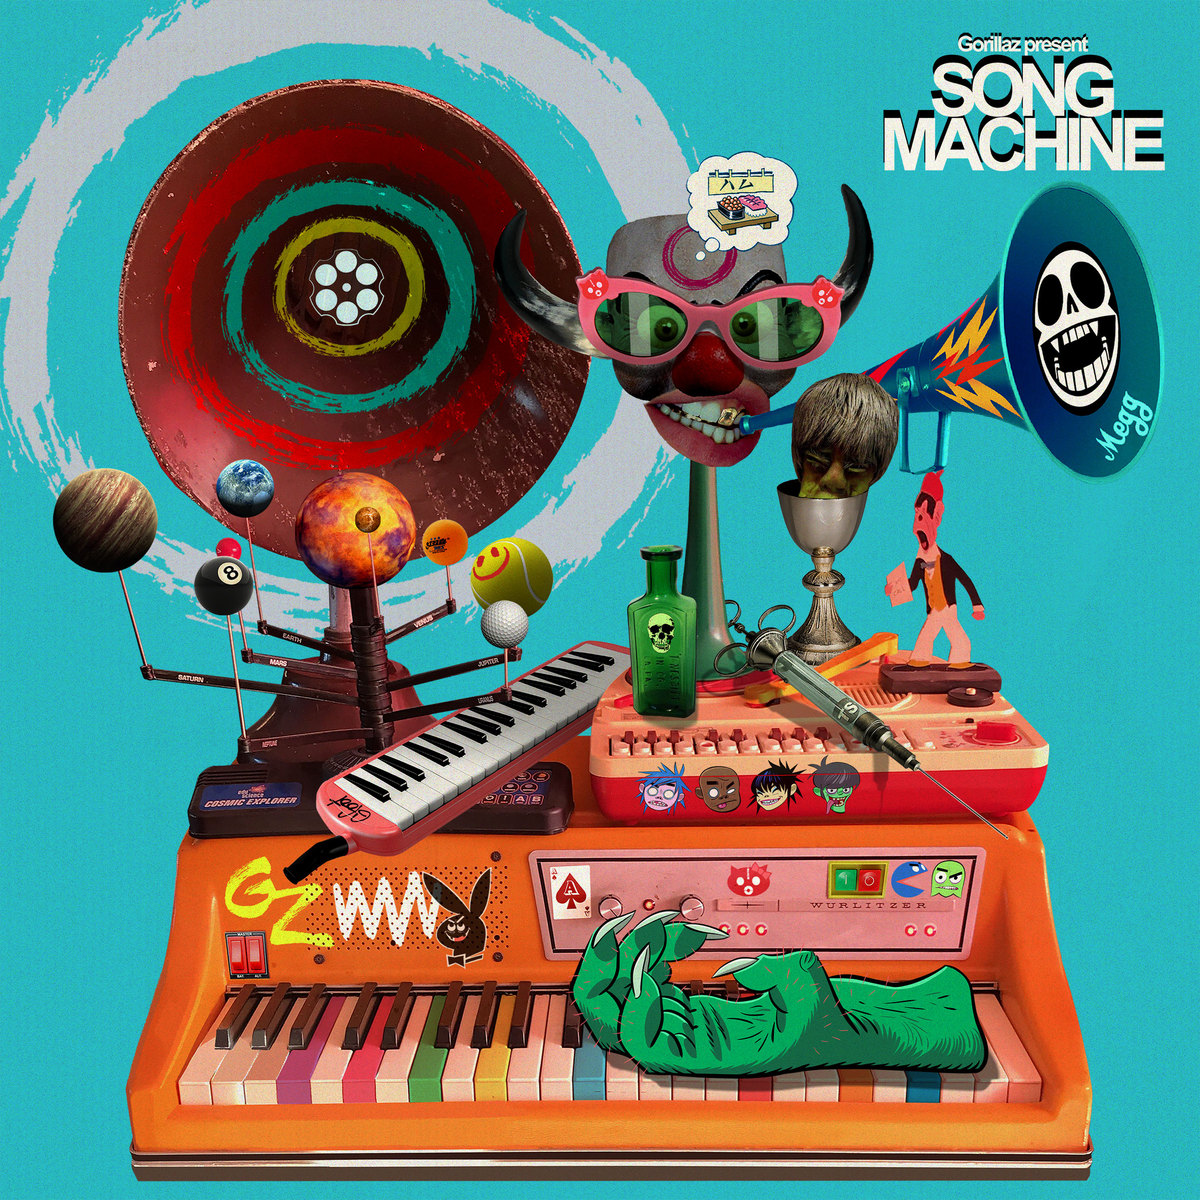 Beck, Elton John y más aparecerán en el disco 'Song Machine' de Gorillaz